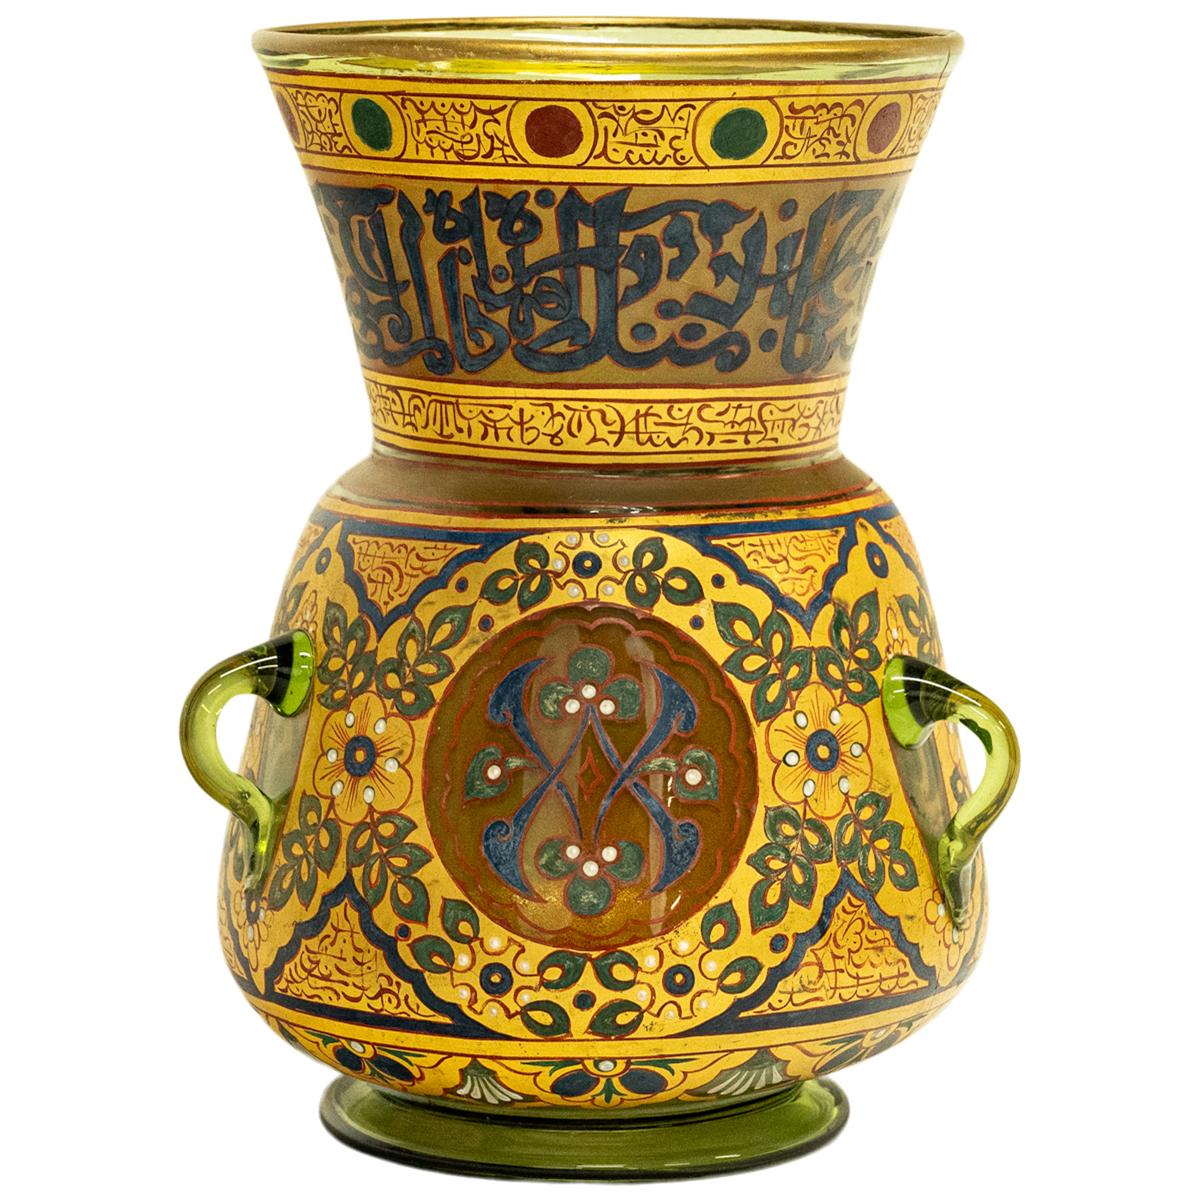 Diese sehr schöne antike Moschee-Lampe im Mamluken-Stil stammt wahrscheinlich von Phillippe-Joseph Brocard (1831-1896), hergestellt in Paris um 1880. 
Die Lampe aus mundgeblasenem Glas hat einen bauchigen Körper mit spitz zulaufendem Hals und